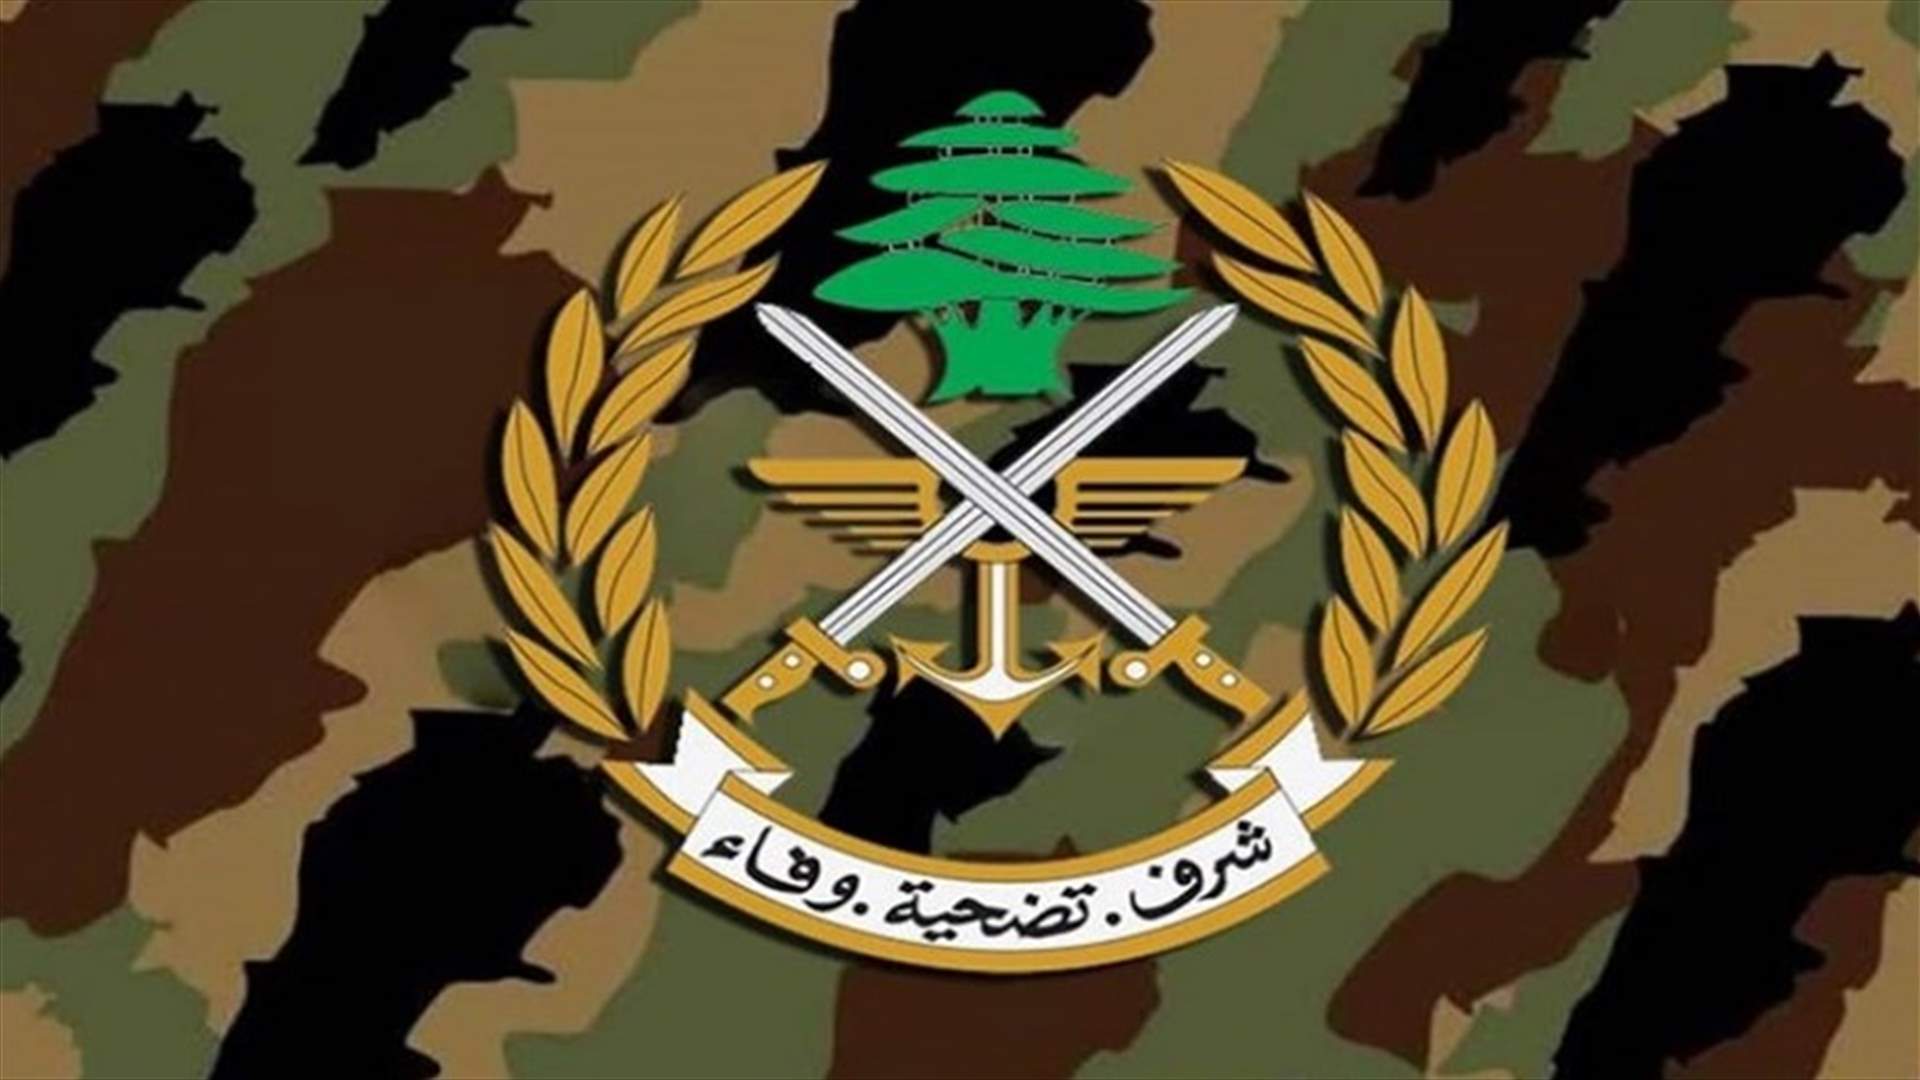 الجيش يعلن توقيف أشخاص في مشاريع القاع والهرمل... اليكم التفاصيل (صور)